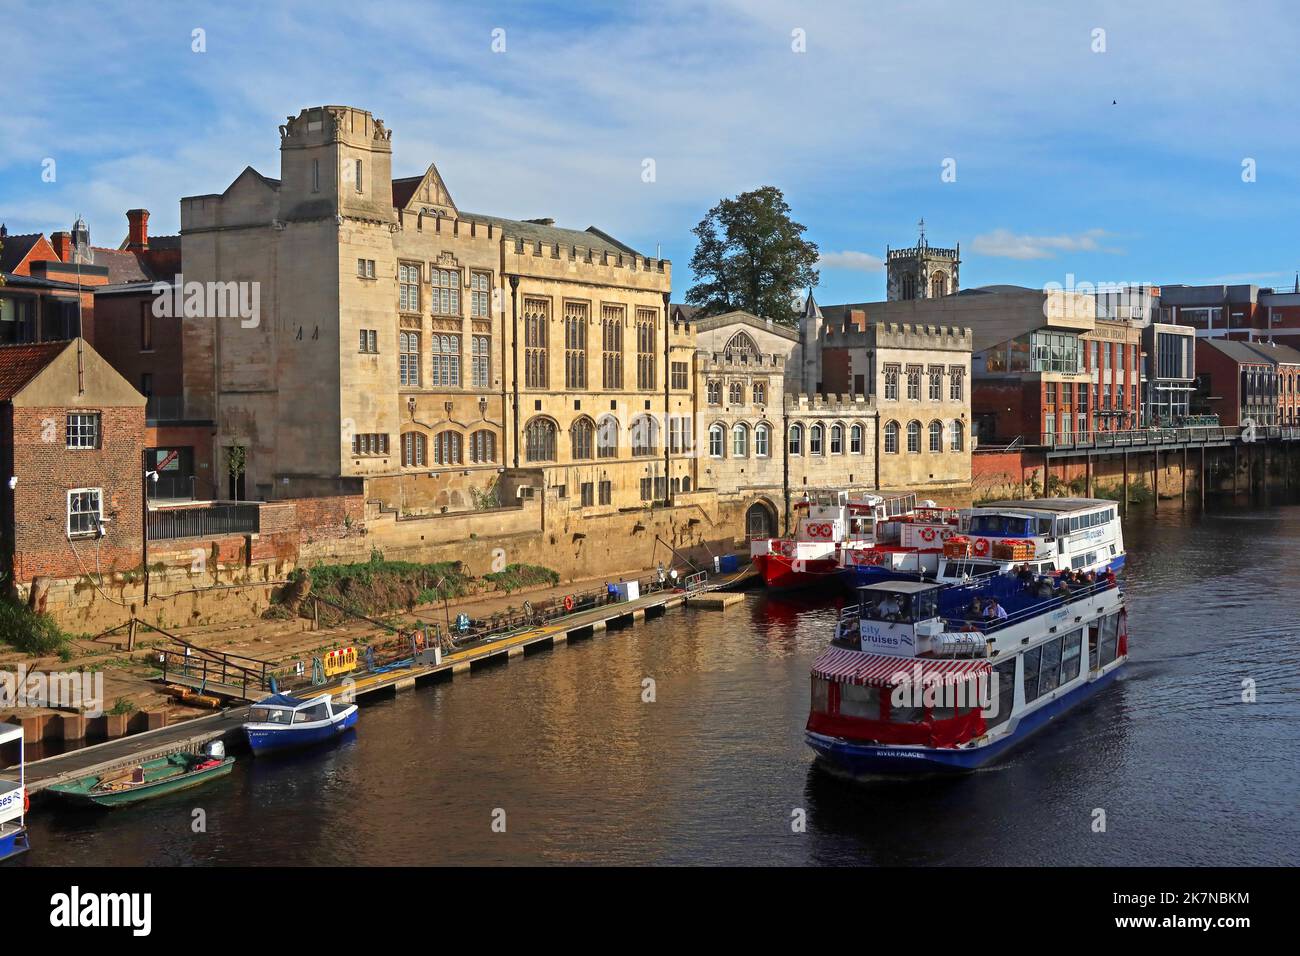 Bateau River Palace City Cruises sur Ouse à York, Yorkshire, Angleterre, Royaume-Uni, YO1 Banque D'Images